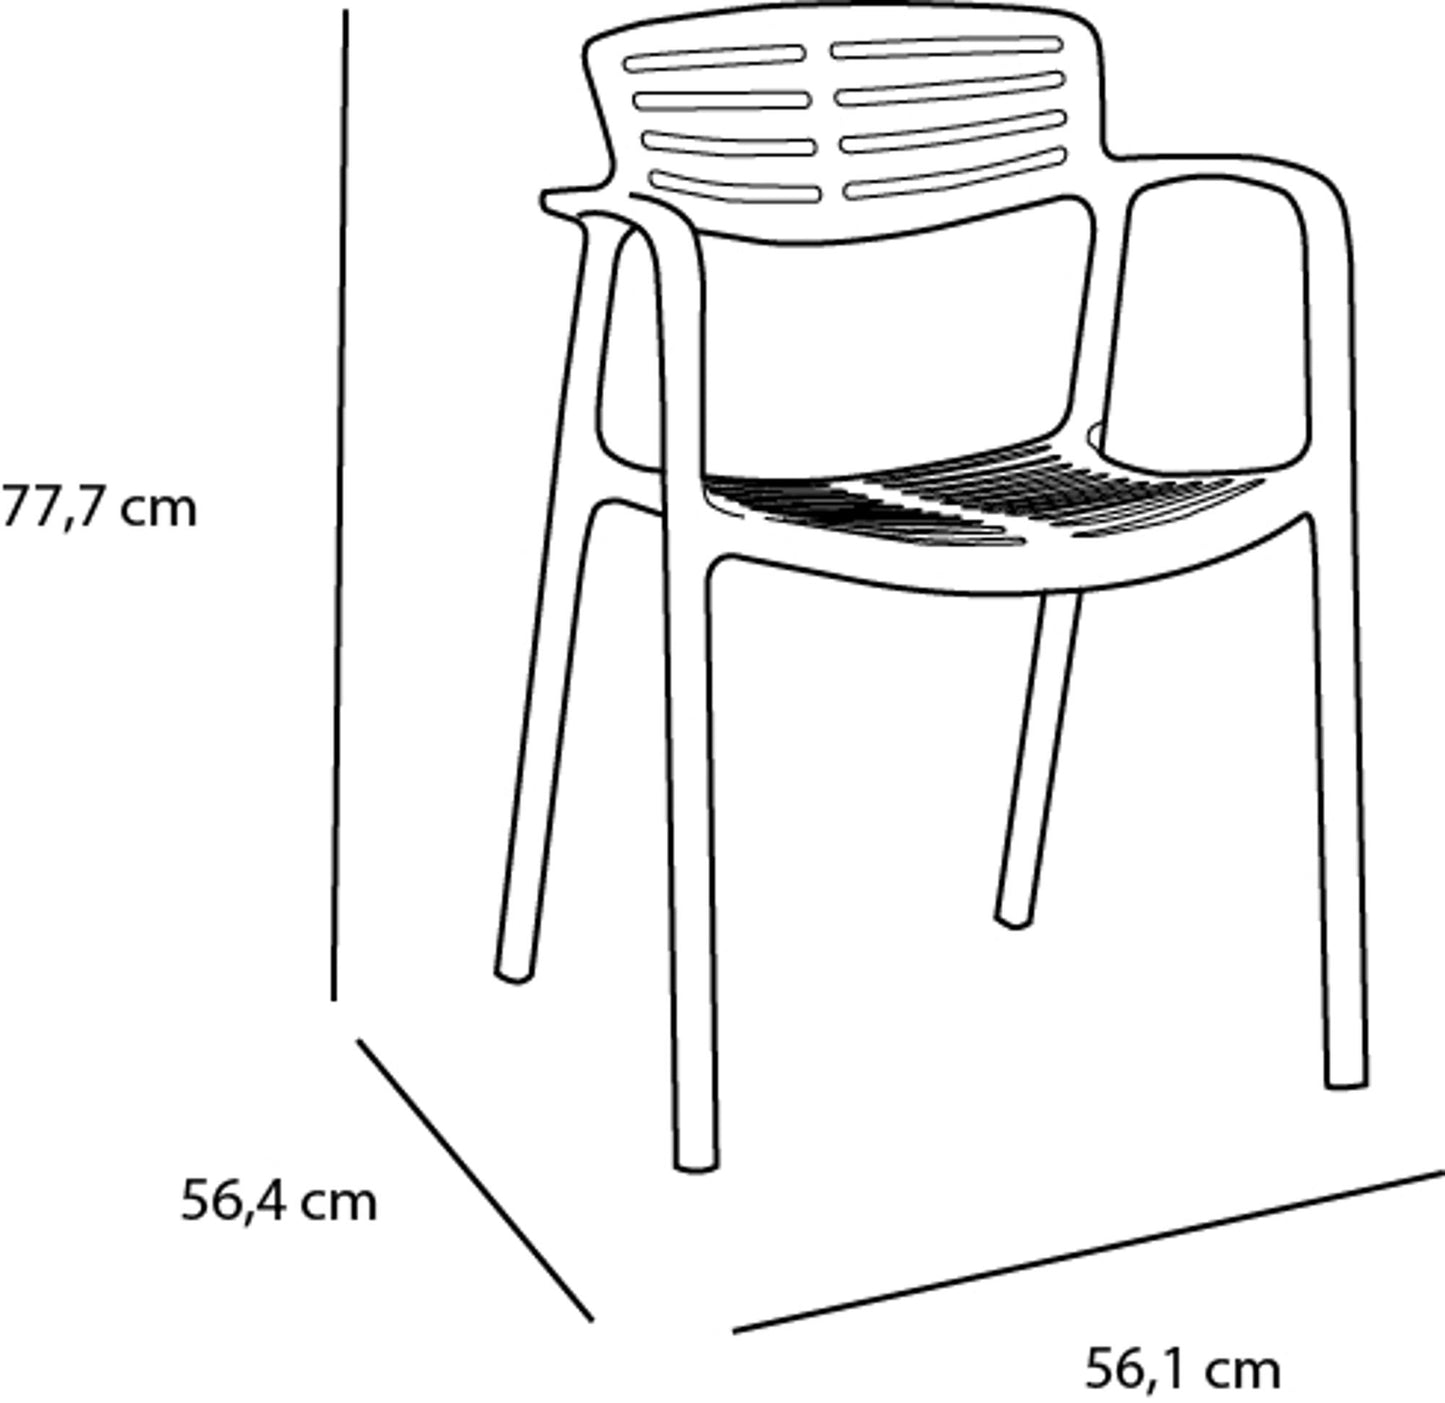 Resol toledo aire set 2 silla con brazos interior, exterior gris verdoso